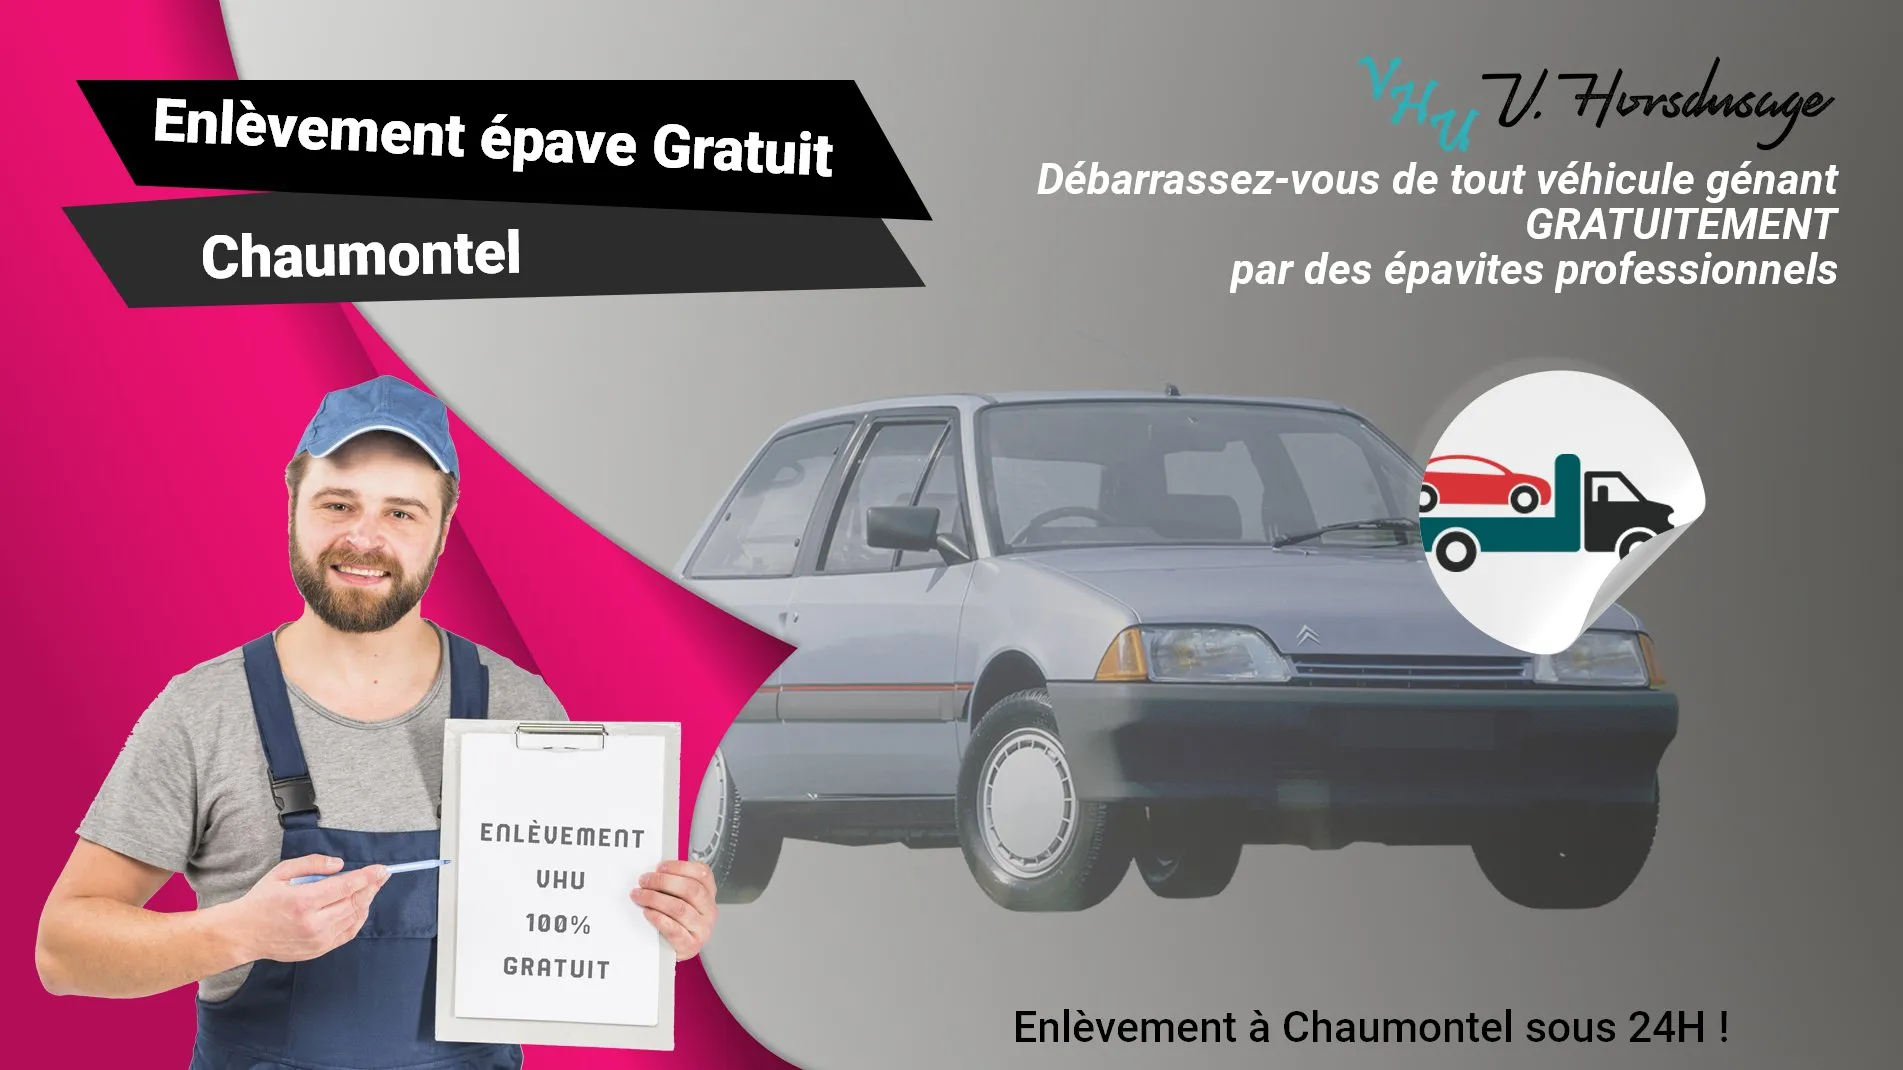 Pour un enlèvement gratuit à Chaumontel, contactez nos épavistes agréé VHU